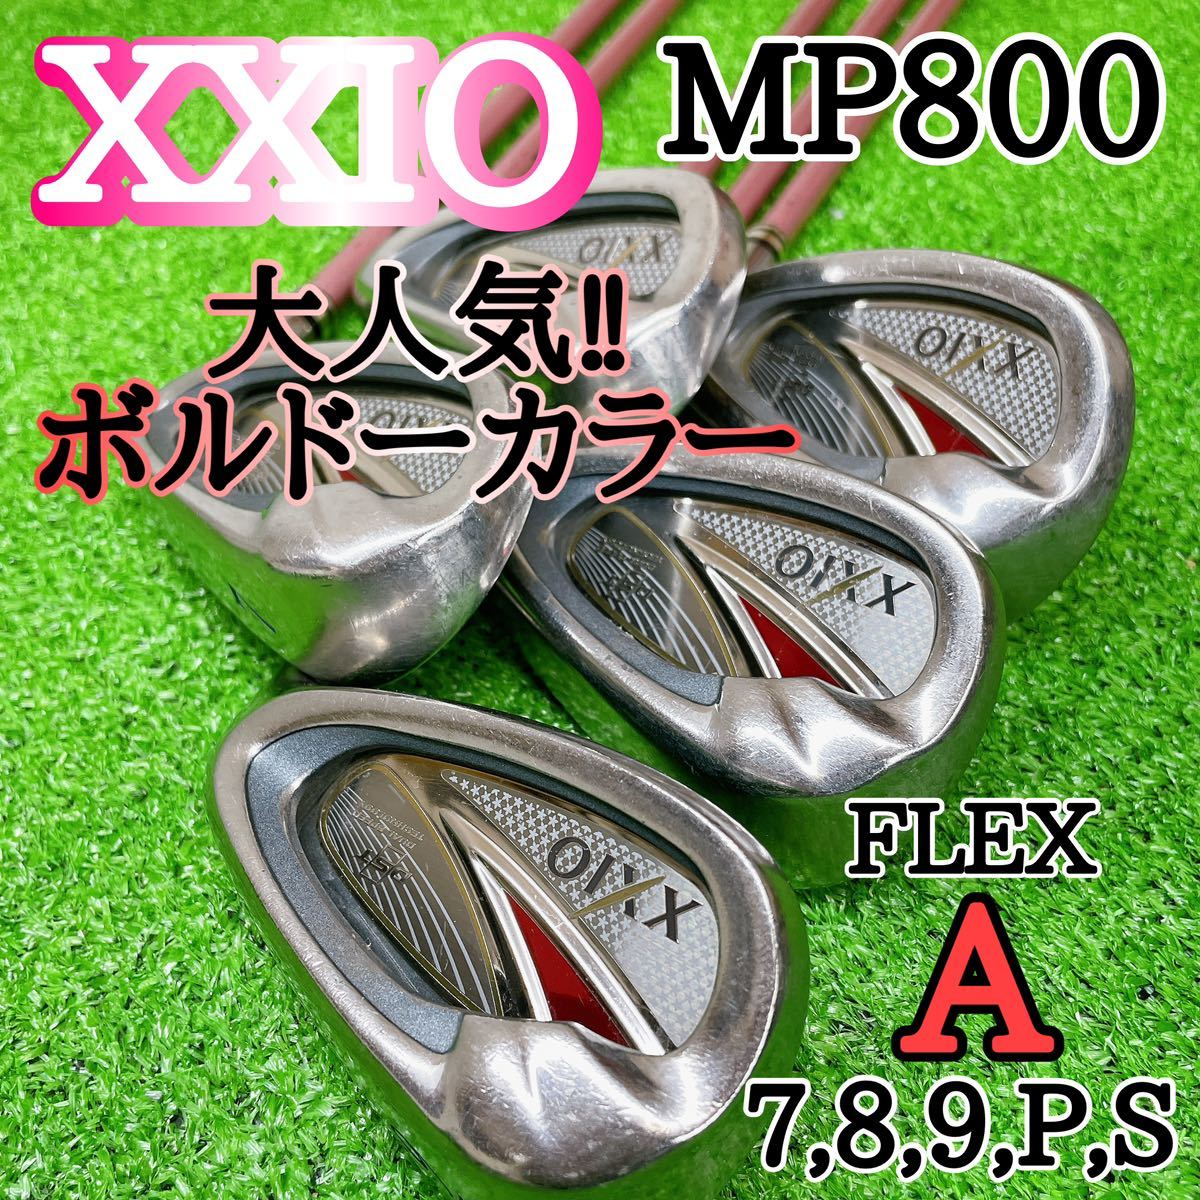 レディース ゴルフクラブ セット ゼクシオ XXIO MP800 Aフレックス-